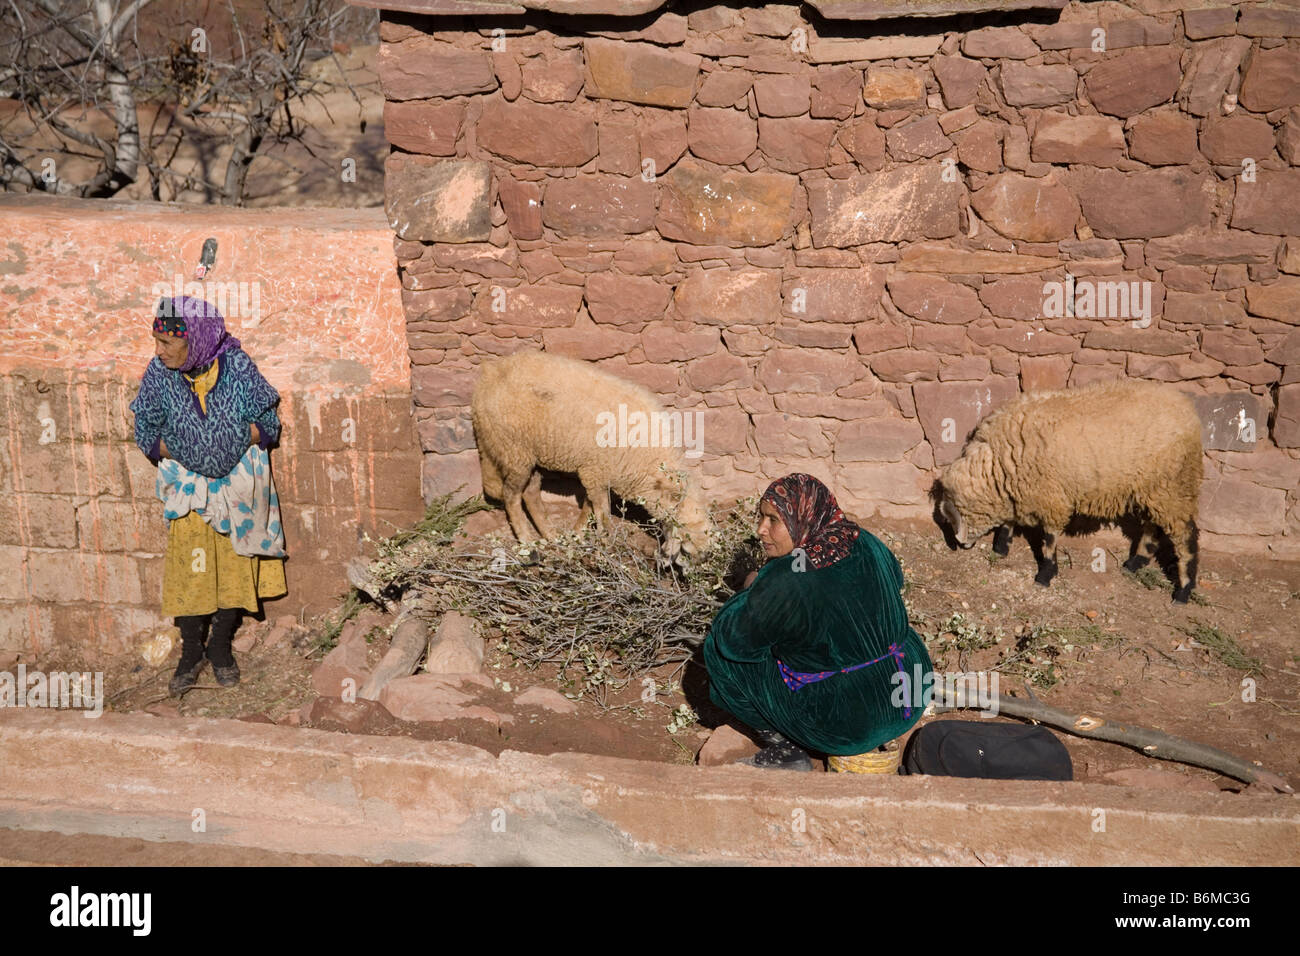 Sidi Faress Village Maroc Afrique du Nord décembre deux femmes du village regardant feeding sheep en face d'une maison berbère Banque D'Images